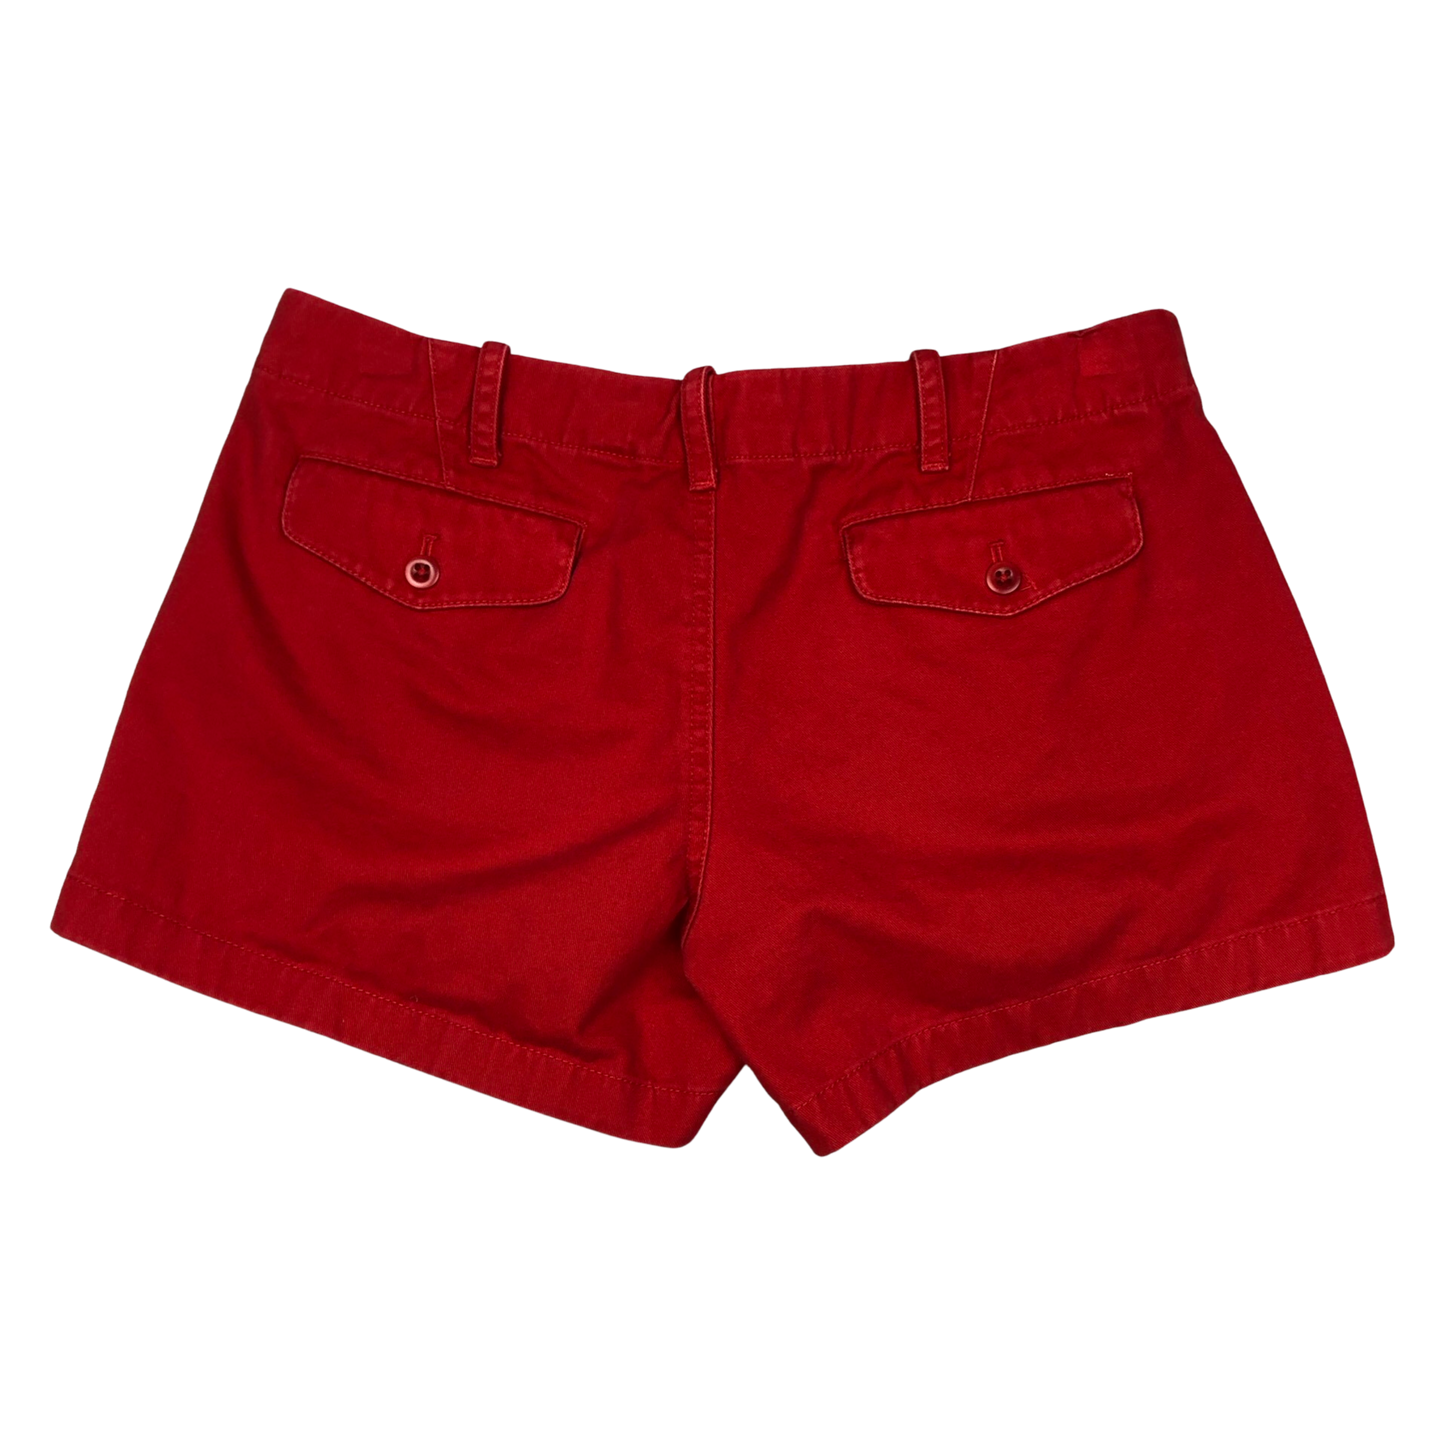 Vintage 90s Ralph Lauren Women's Red Shorts 12